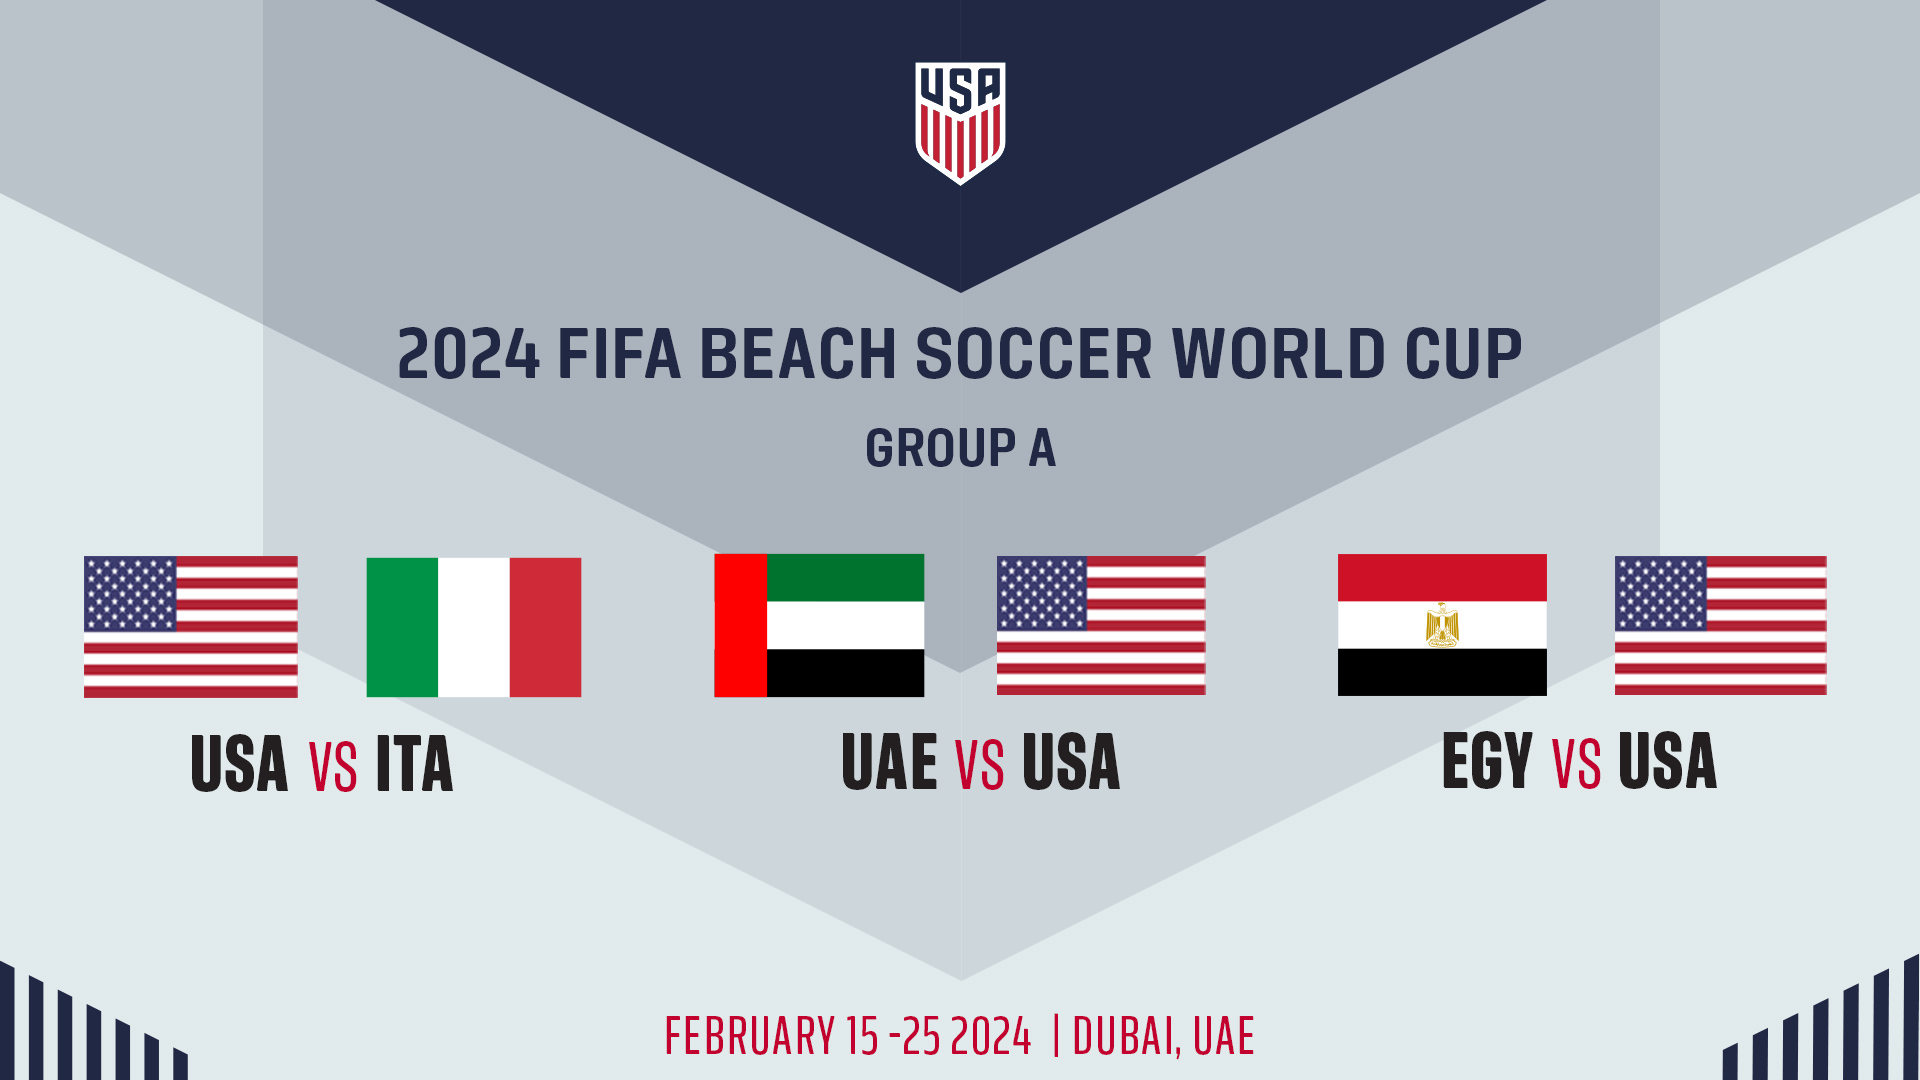 La Selección Nacional Masculina de Fútbol Playa de Estados Unidos se enfrentará a Italia, Emiratos Árabes Unidos y Egipto en la Copa Mundial de Fútbol Playa de la FIFA 2024 en los Emiratos Árabes Unidos.